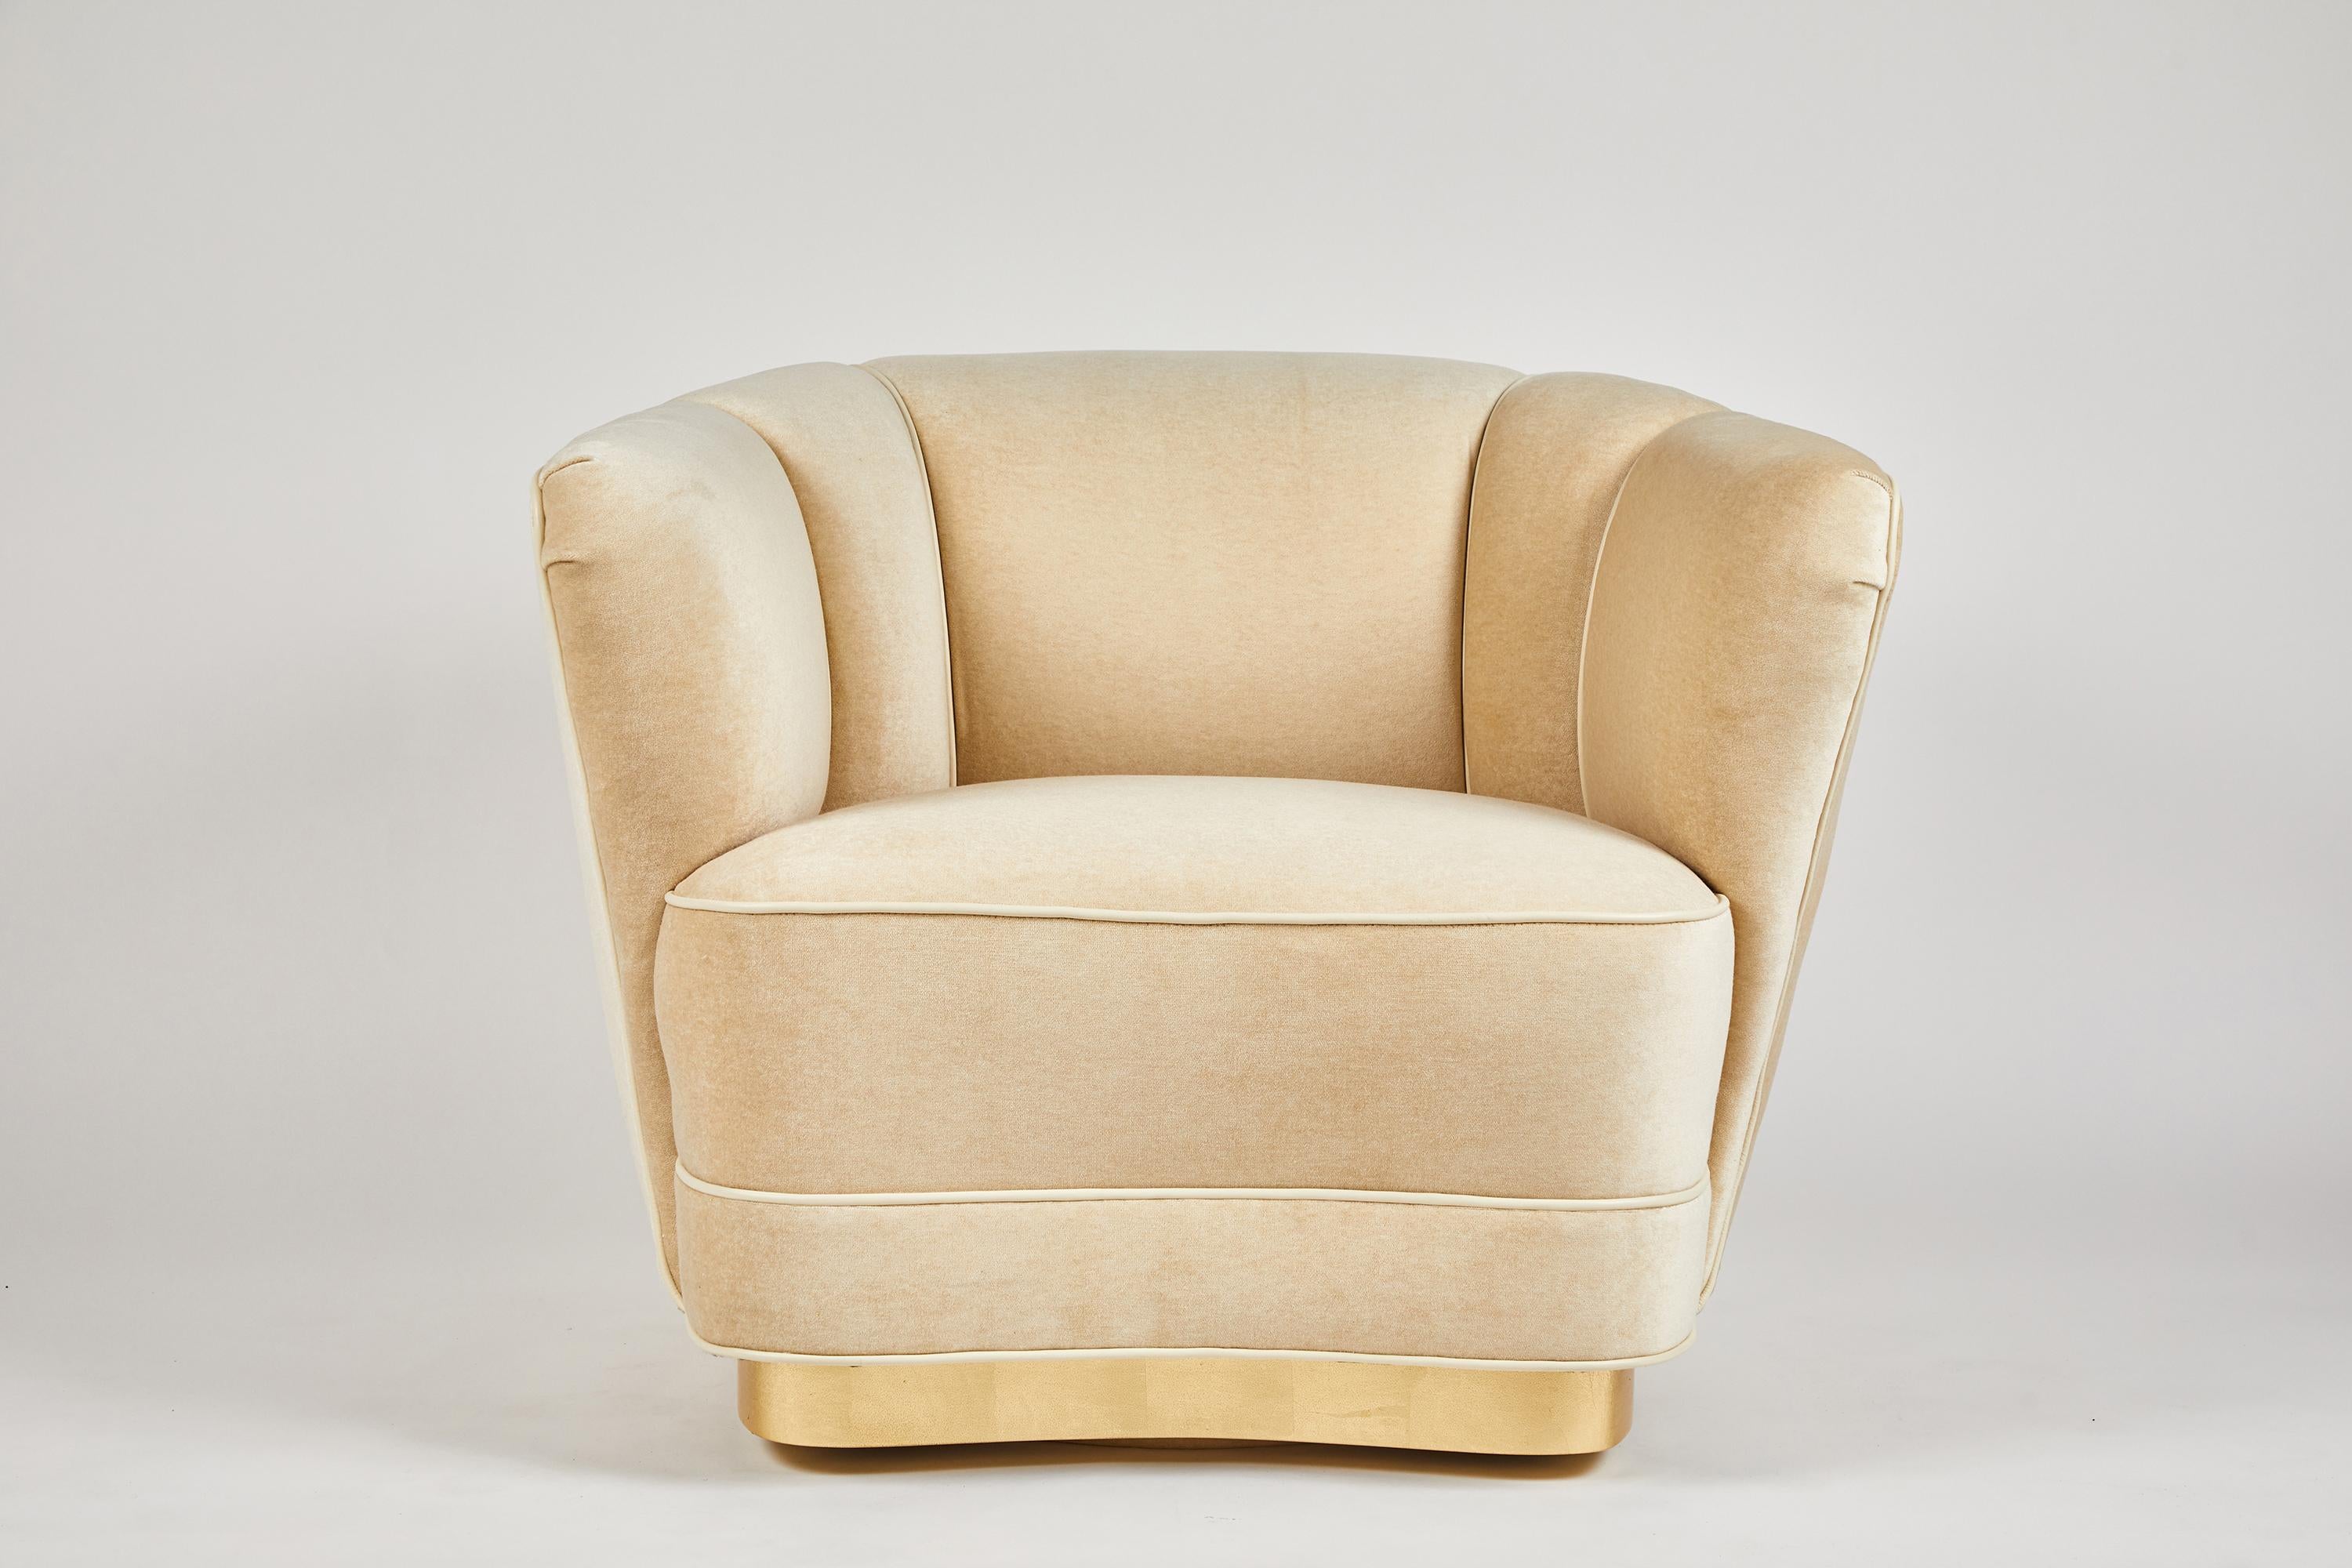 Dragonette limited presenta la silla club Sutton place. Un diseño bello y elegante, como muestra la versión giratoria sobre una base dorada. Totalmente personalizable, incluida una versión con pies. El precio es COM.